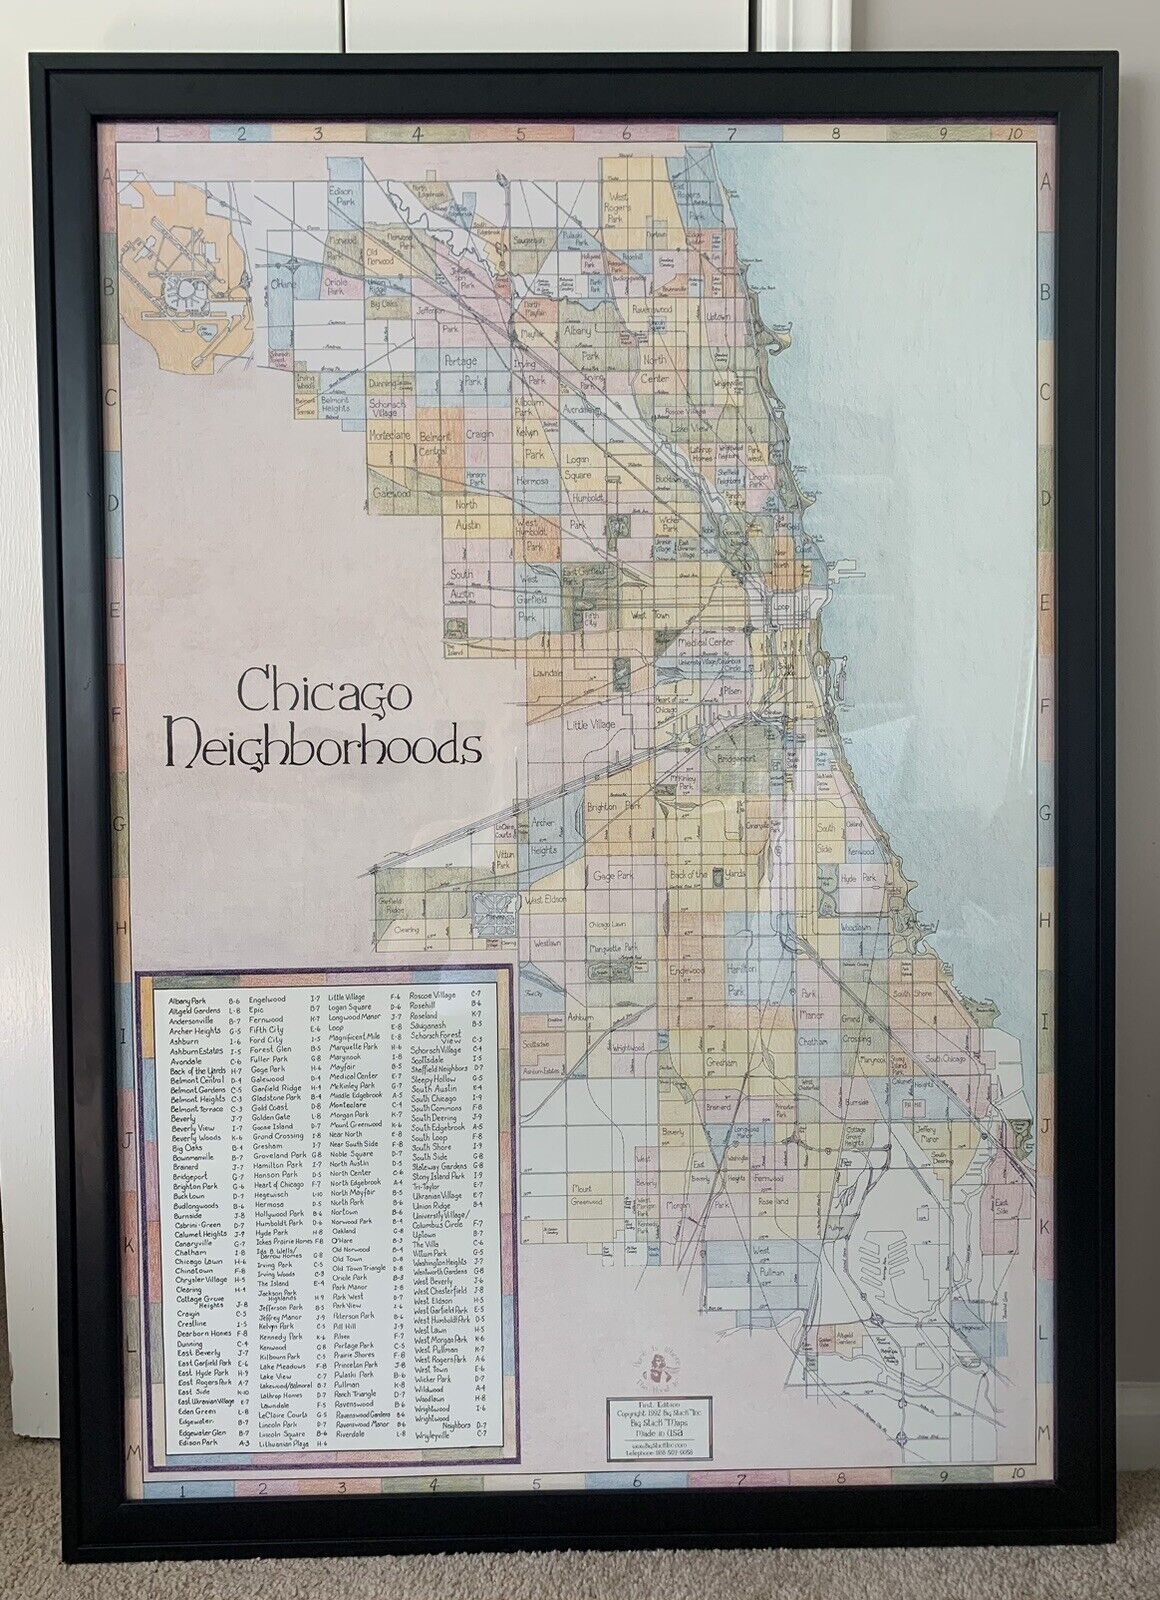 Chicago Neighborhoods Vintage 1992 Large Map by Big Stick Inc Frame or No Frame